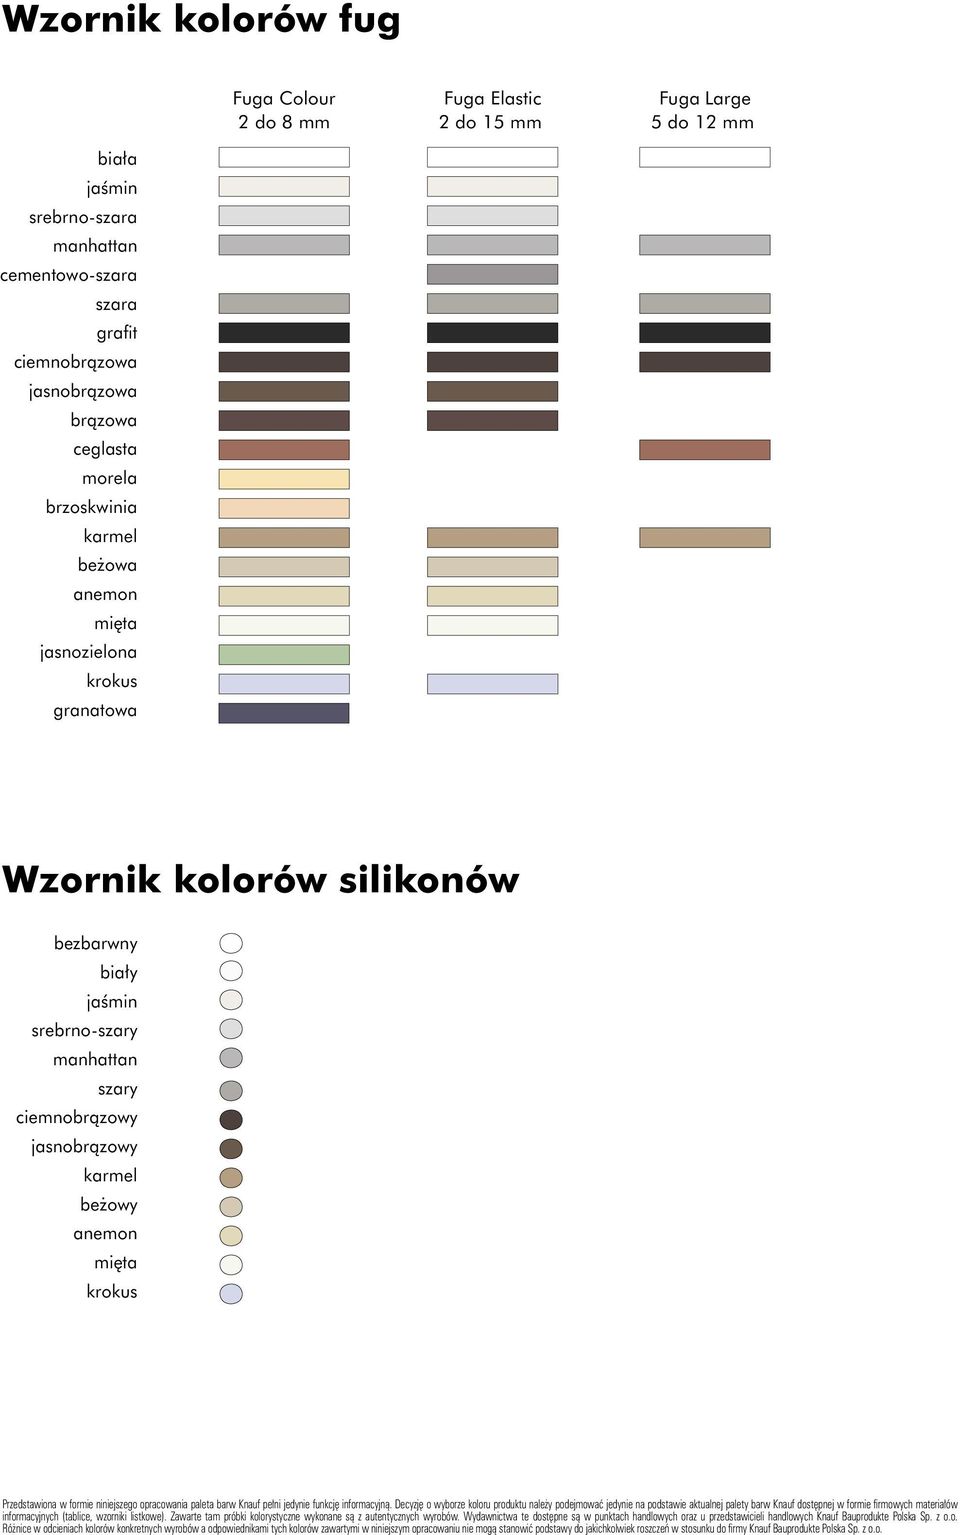 anemon mięta krokus Przedstawiona w formie niniejszego opracowania paleta barw Knauf pełni jedynie funkcję informacyjną.